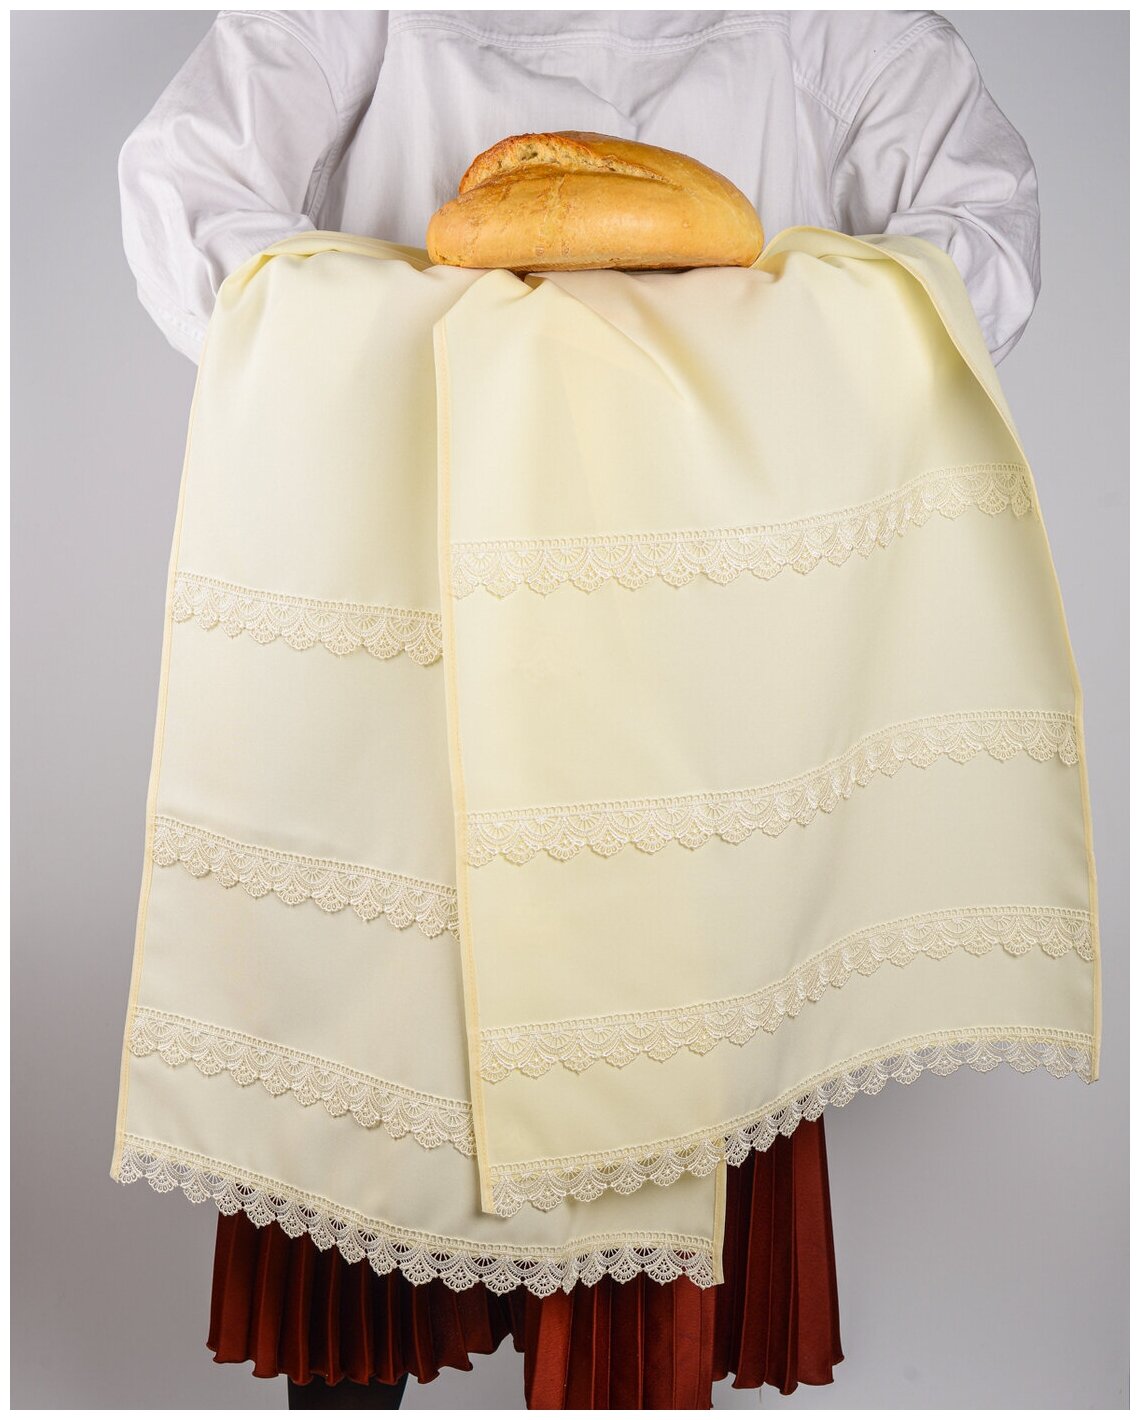 Свадебный рушник на венчание молодоженов в церкви из матового габардина айвори с ажурным кружевом ручной работы